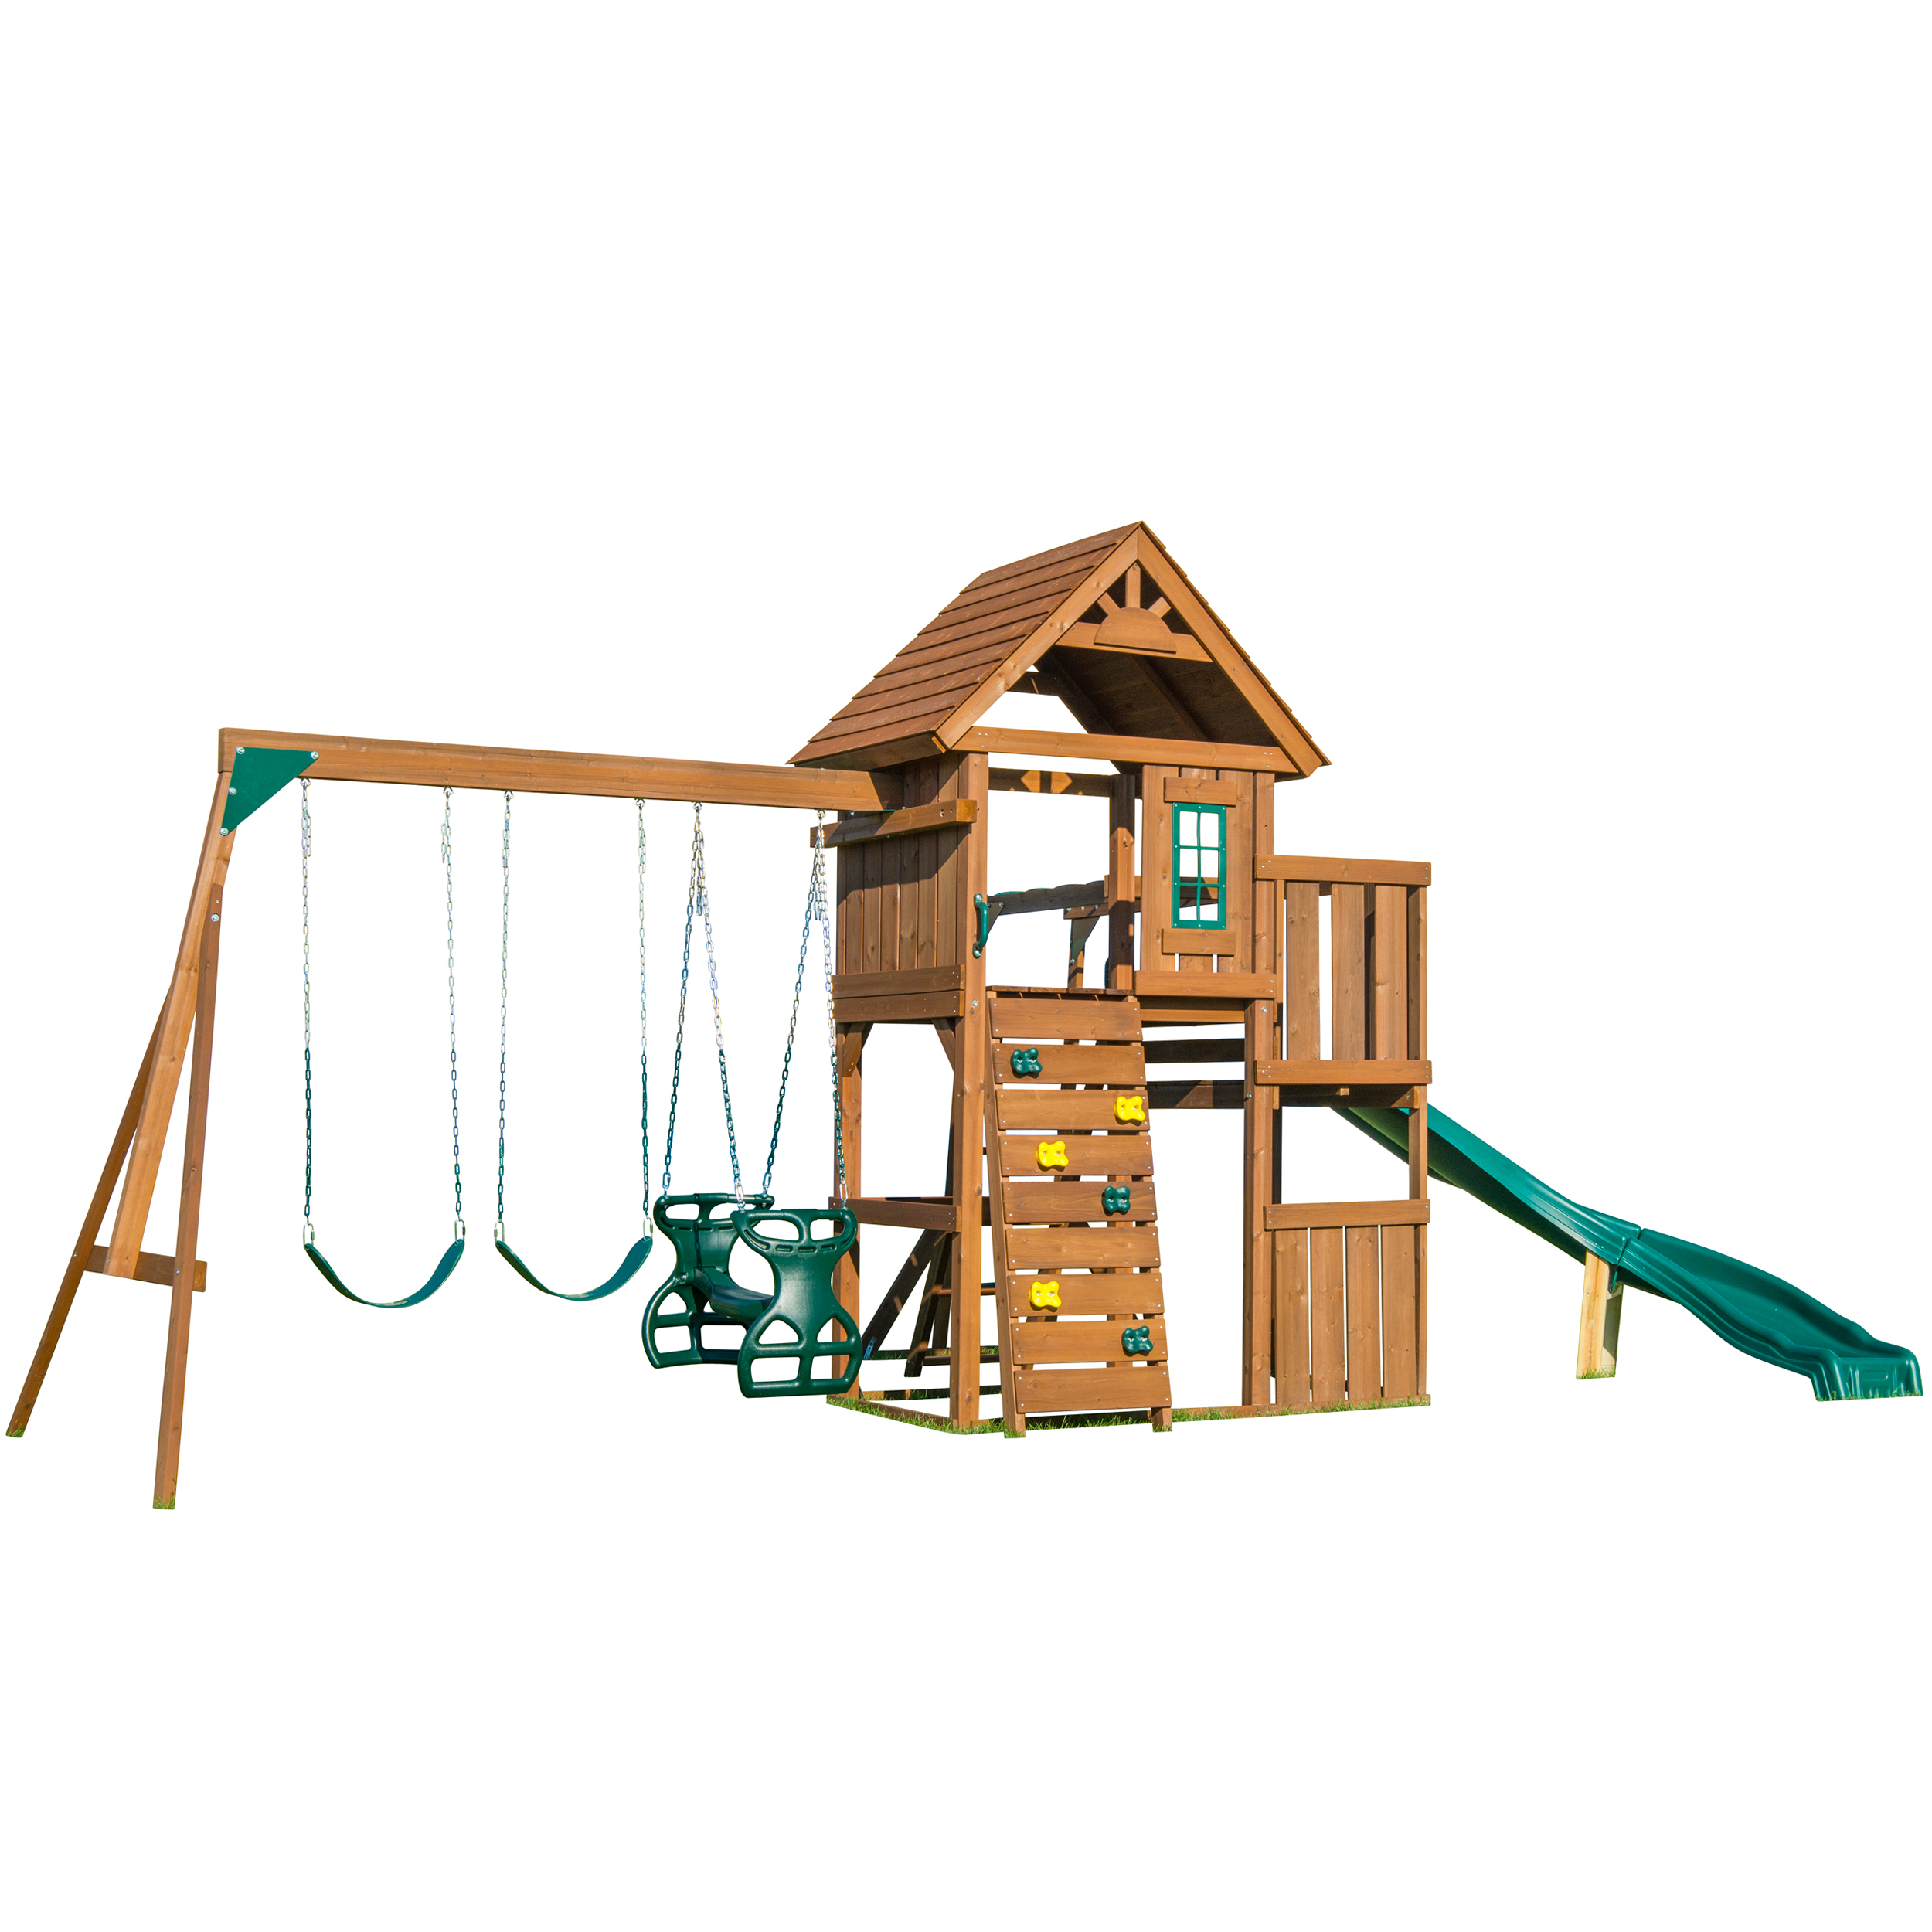 Swing-N-Slide Cedar Brook Wooden Backyard Play Set with Monkey Bars, Swings, and Curved Slide - image 3 of 6